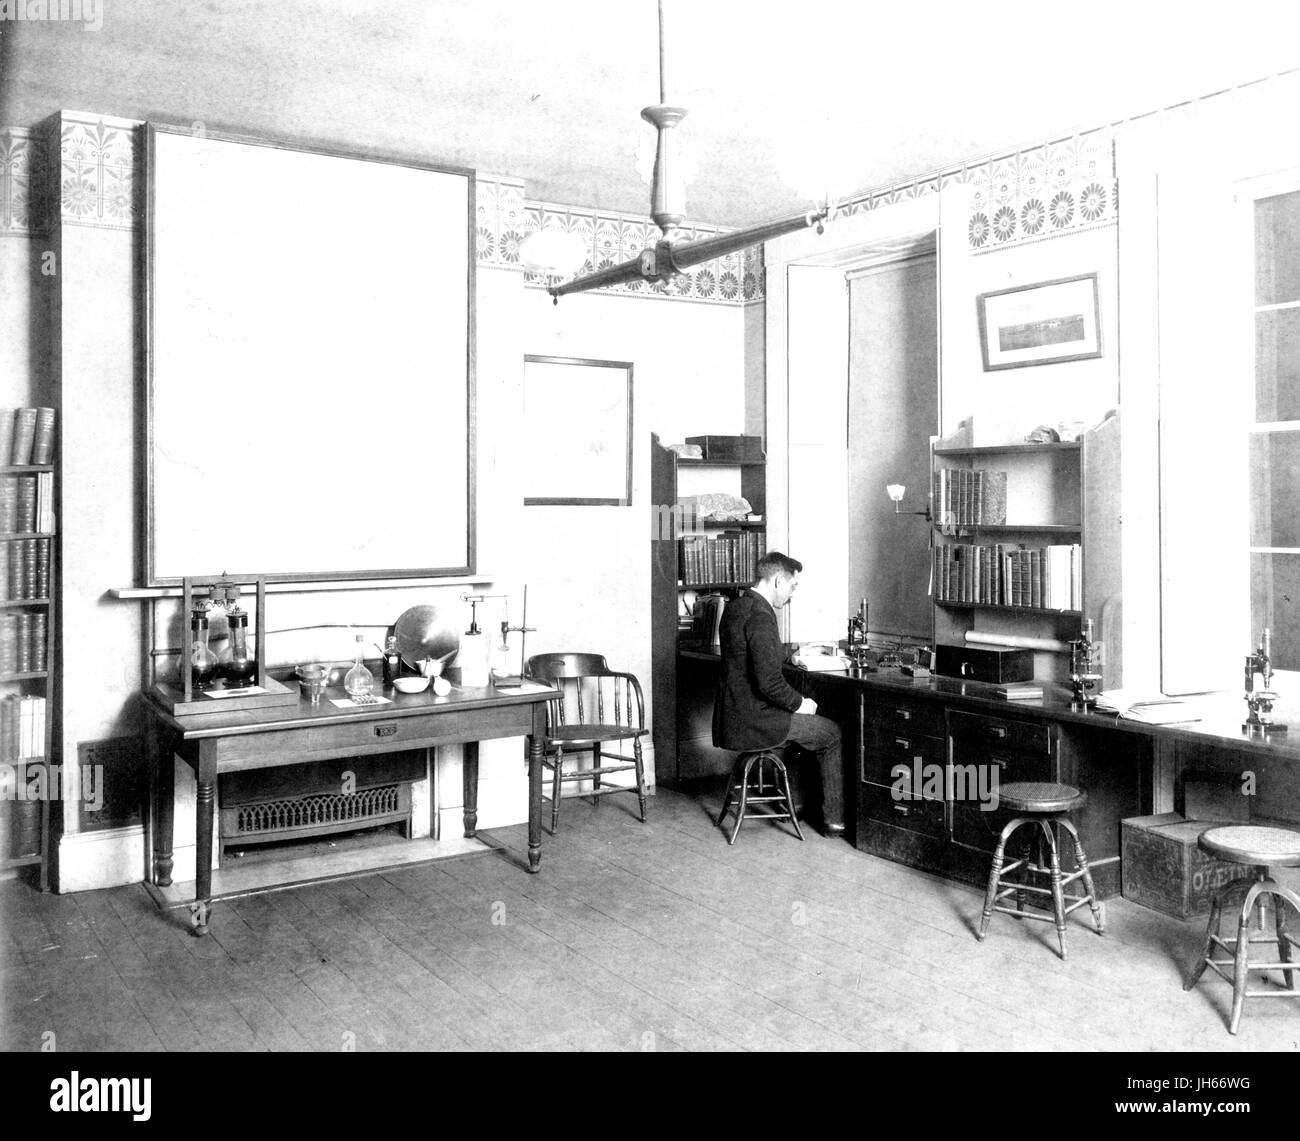 Interno della petrografia camera, contenente le scrivanie, scaffalature, attrezzature di laboratorio, e un uomo che lavora in un microscopio, al vecchio Johns Hopkins University campus in downtown Baltimore, Maryland, 1895. Foto Stock